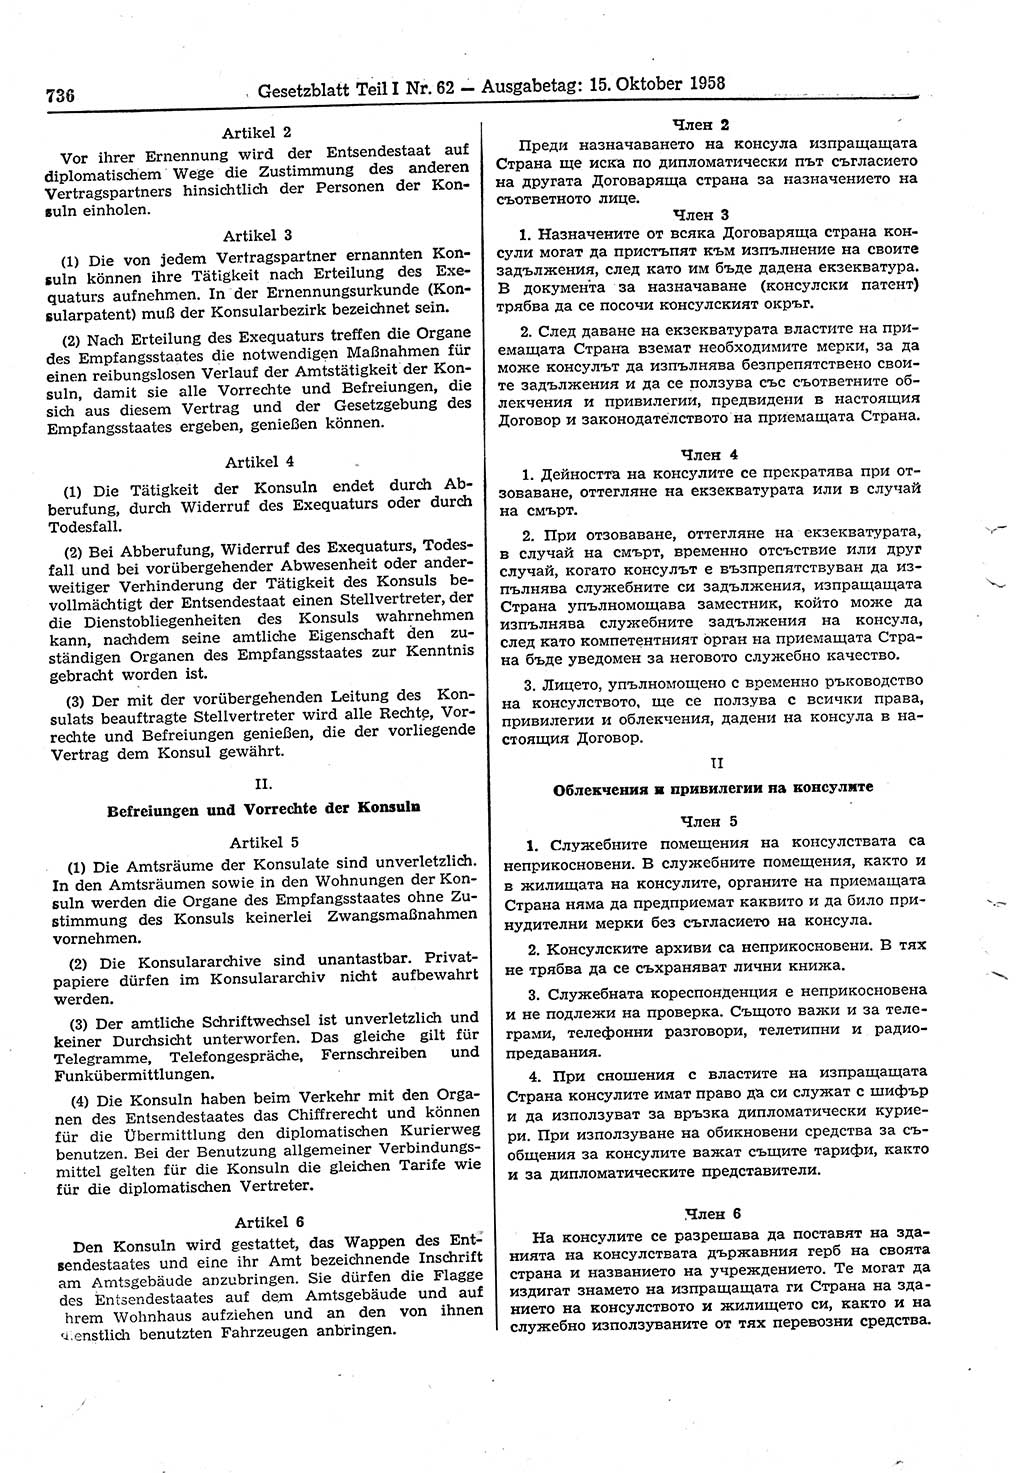 Gesetzblatt (GBl.) der Deutschen Demokratischen Republik (DDR) Teil Ⅰ 1958, Seite 736 (GBl. DDR Ⅰ 1958, S. 736)